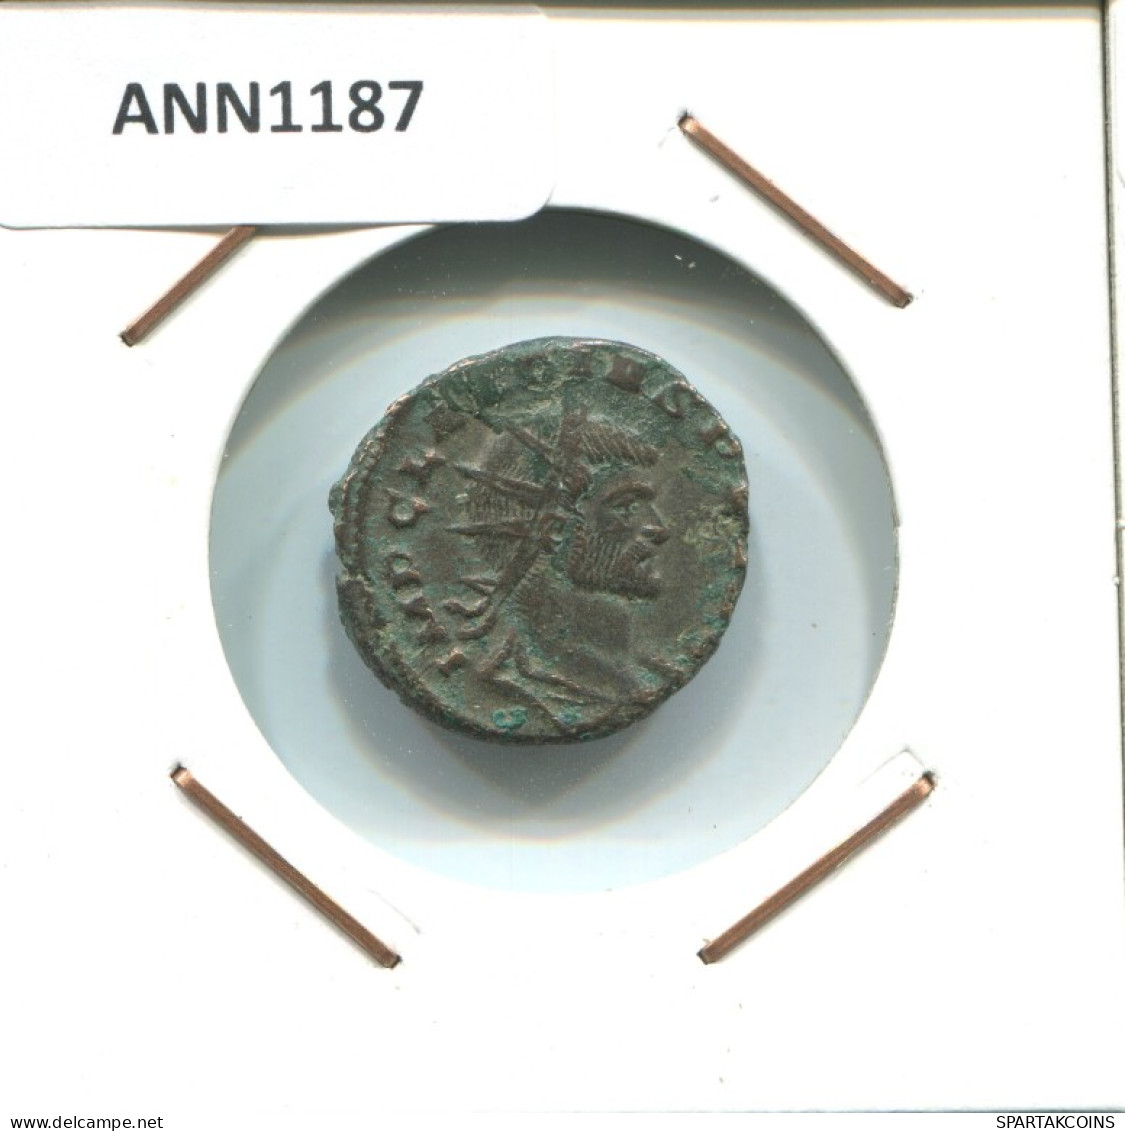 CLAUDIUS II Antike RÖMISCHEN KAISERZEIT Münze 2.8g/20mm #ANN1187.15.D.A - Der Soldatenkaiser (die Militärkrise) (235 / 284)